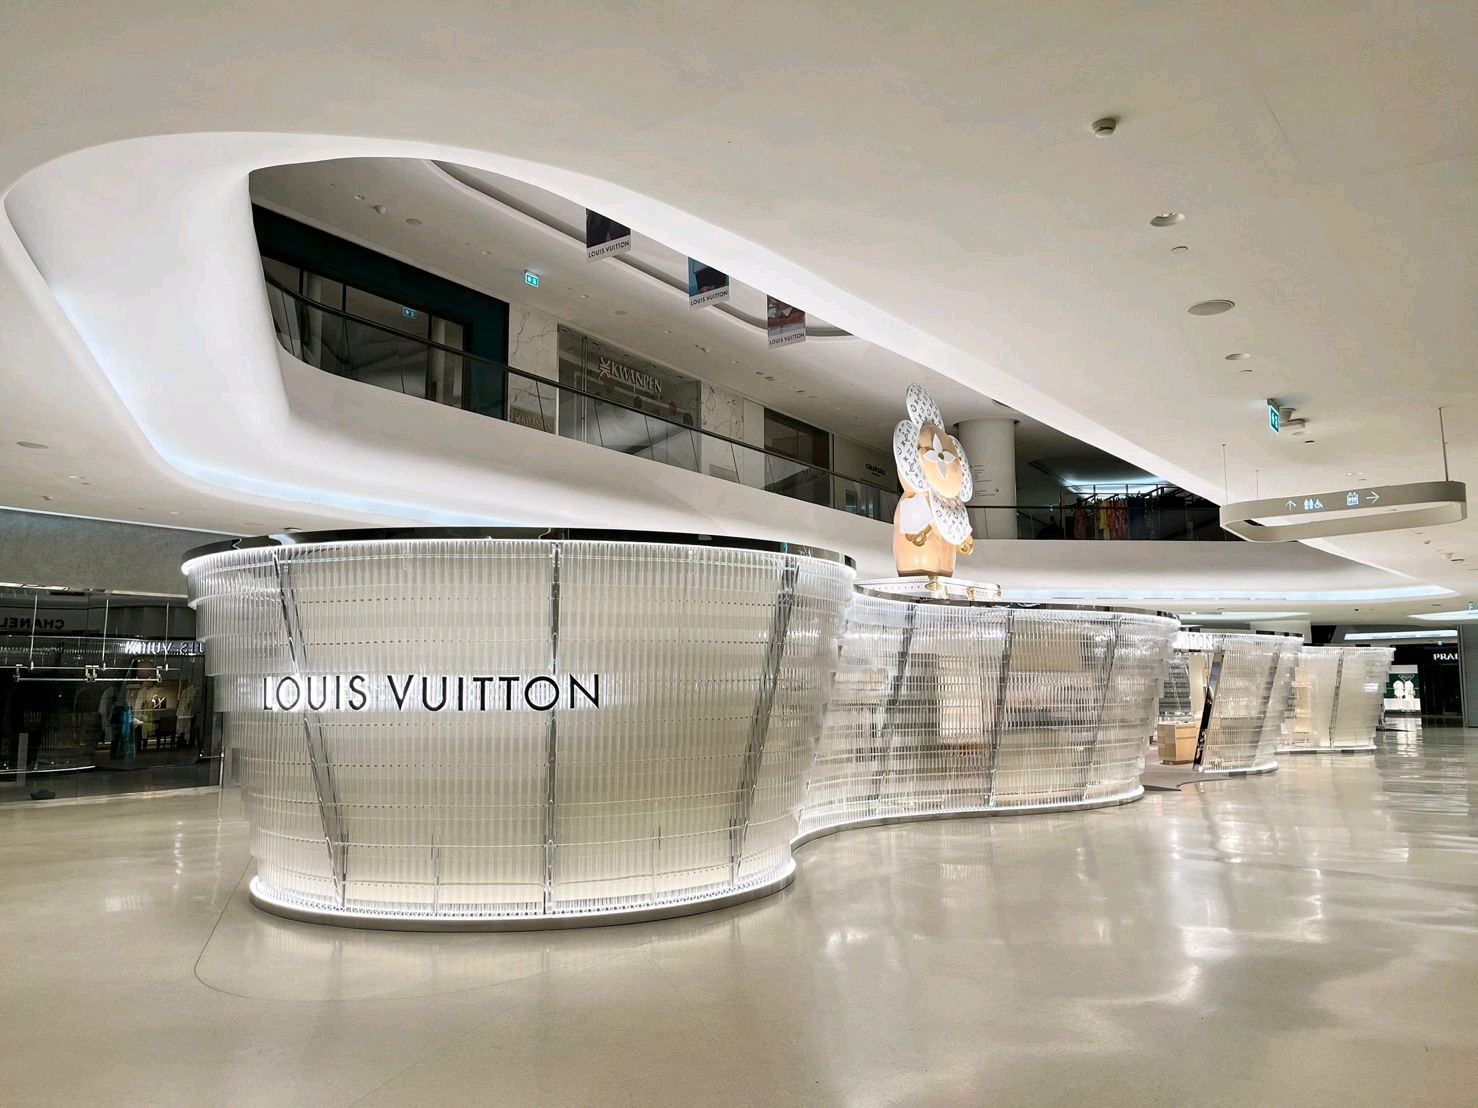 Louis Vuitton Boutique In Bangkok